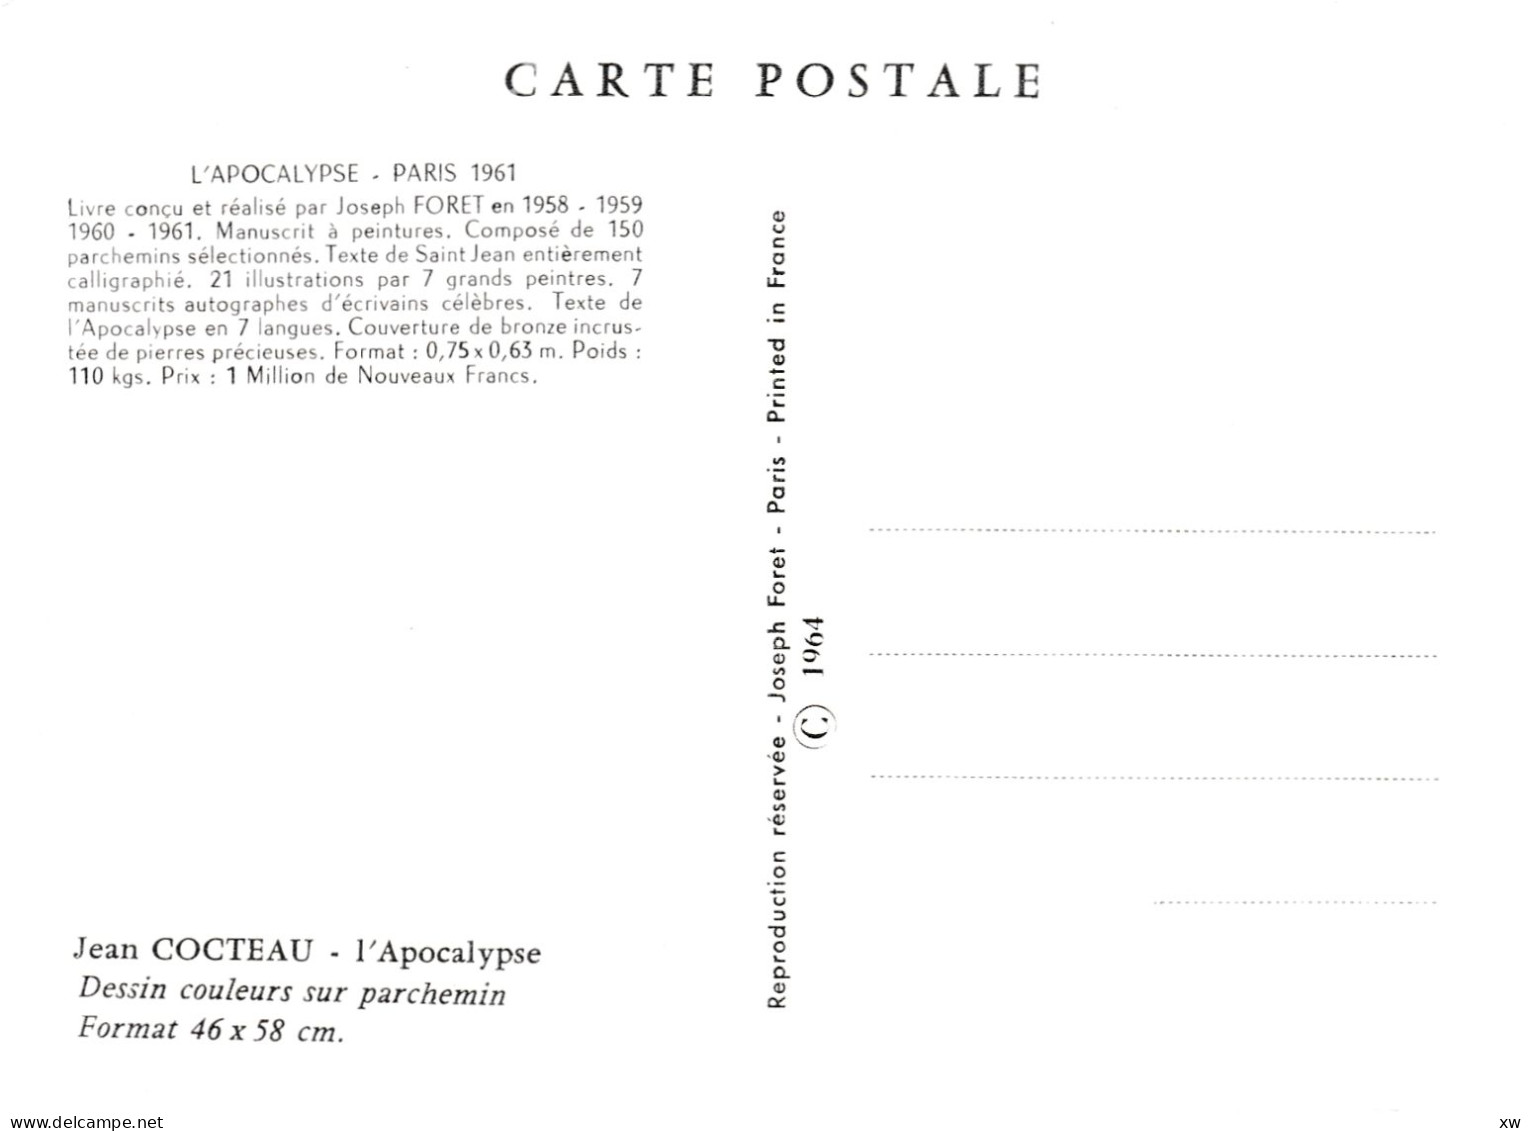 EVENEMENTS - CATASTROPHES - APOCALYPSE de Jodeph FOURET - 4 CPM par S. Dali, J. Cocteau, P-Y Tremois - 20-04-24